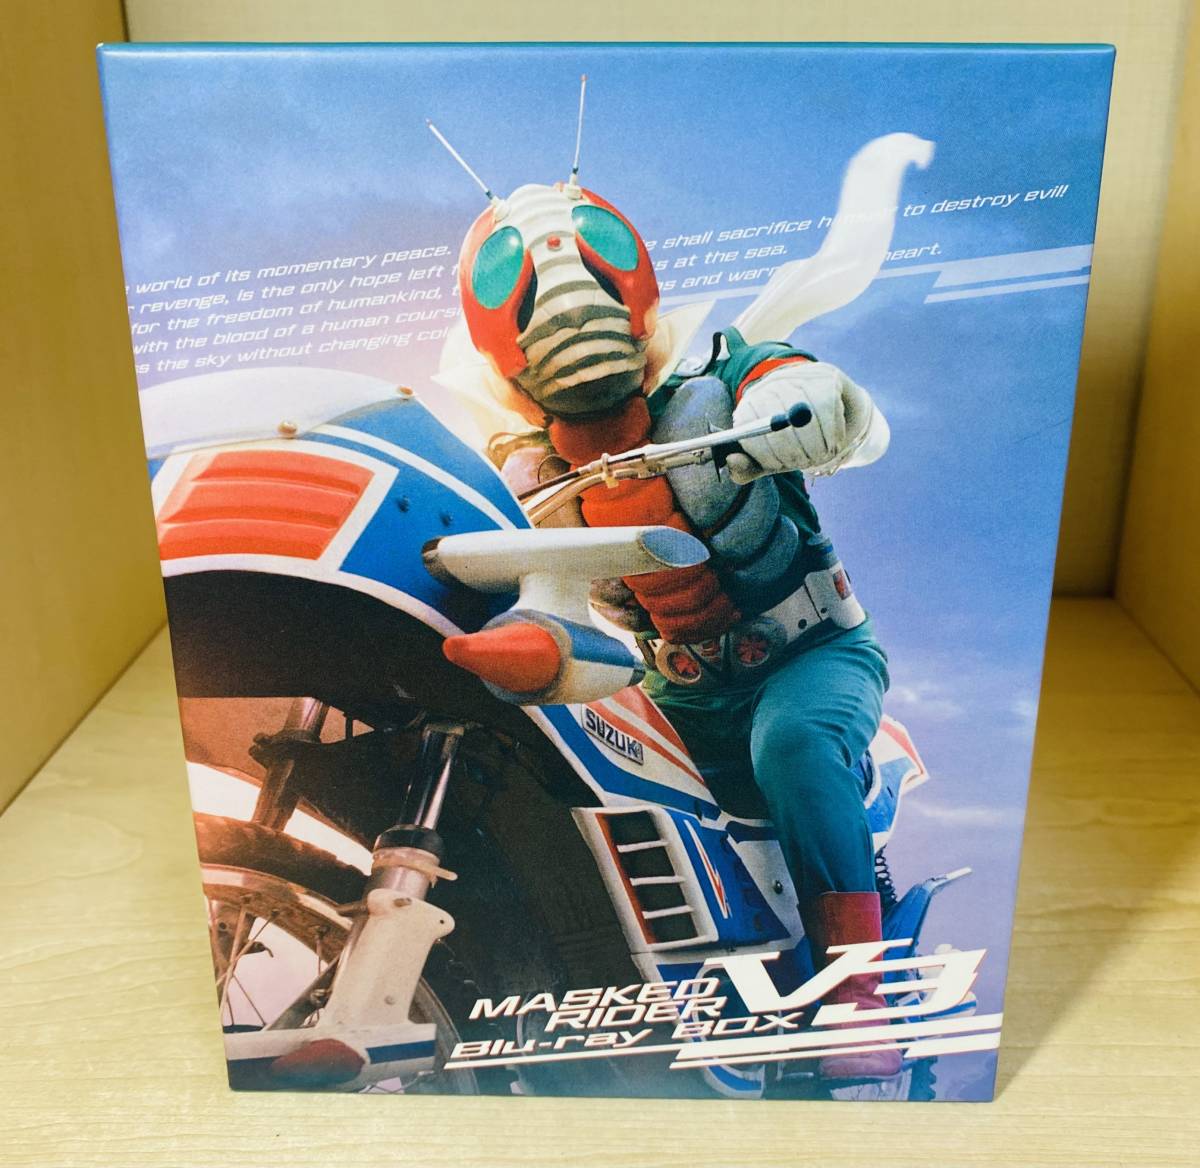 【超目玉枠】 仮面ライダー Blu-ray BOX 1 初回限定版 全巻収納BOX付